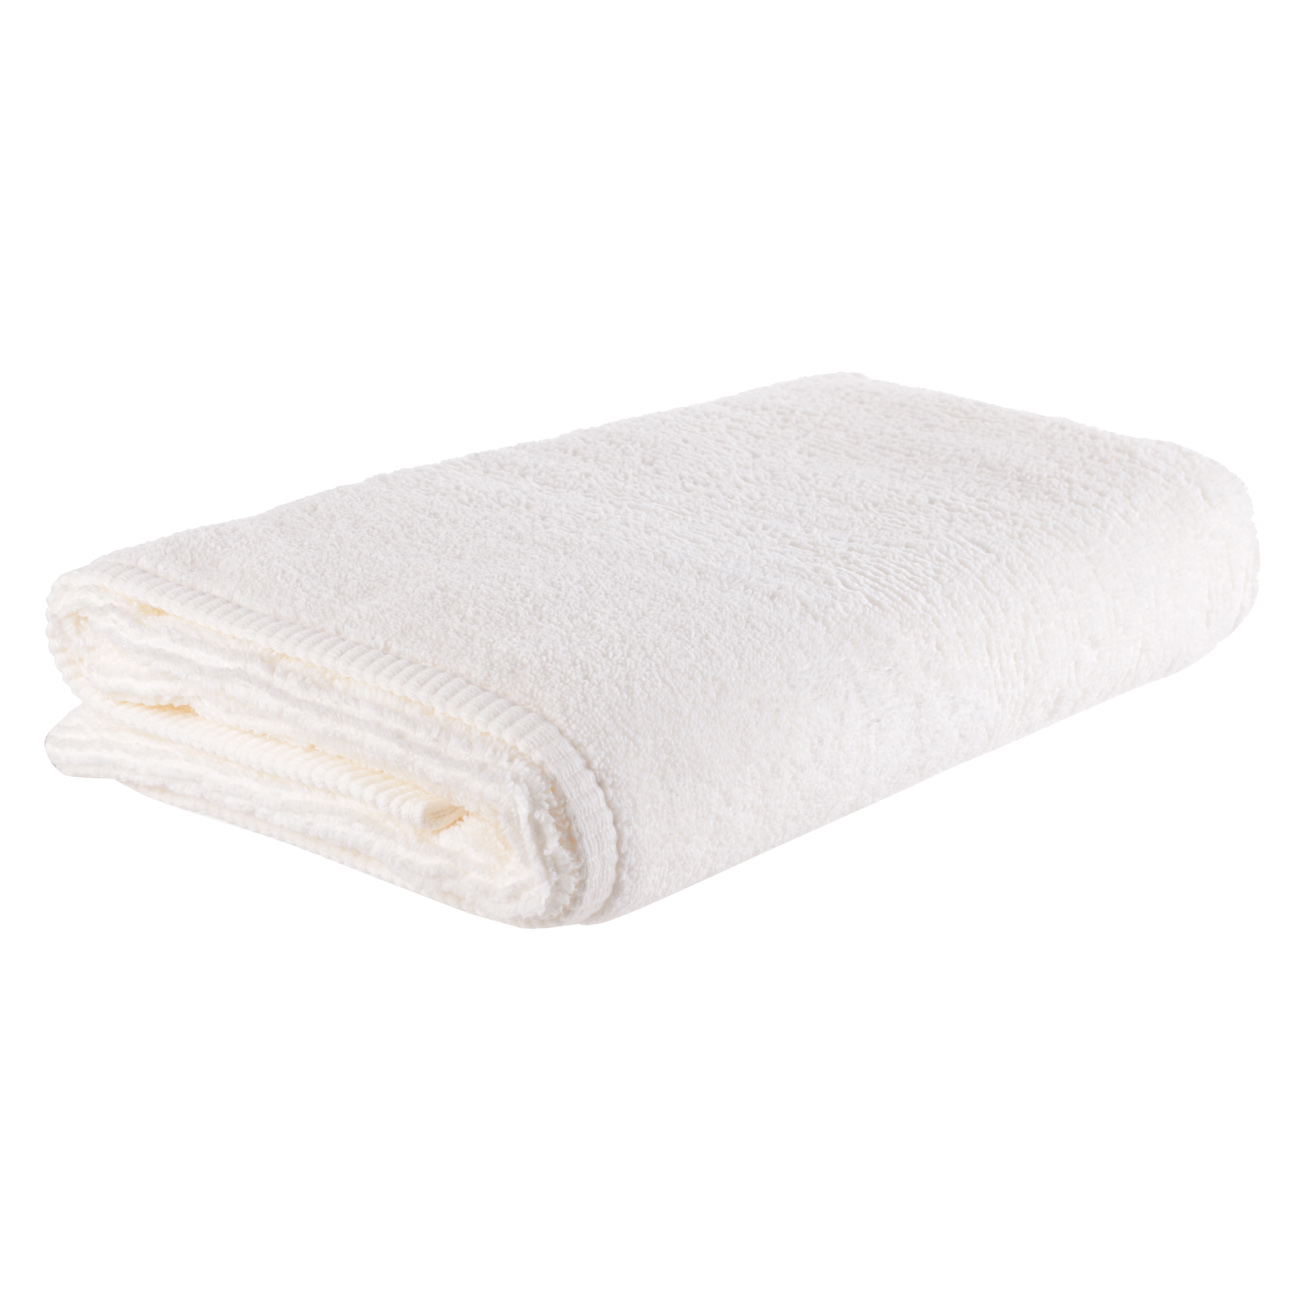 Towel, 70x140 cm, cotton, white, Terry cotton изображение № 3